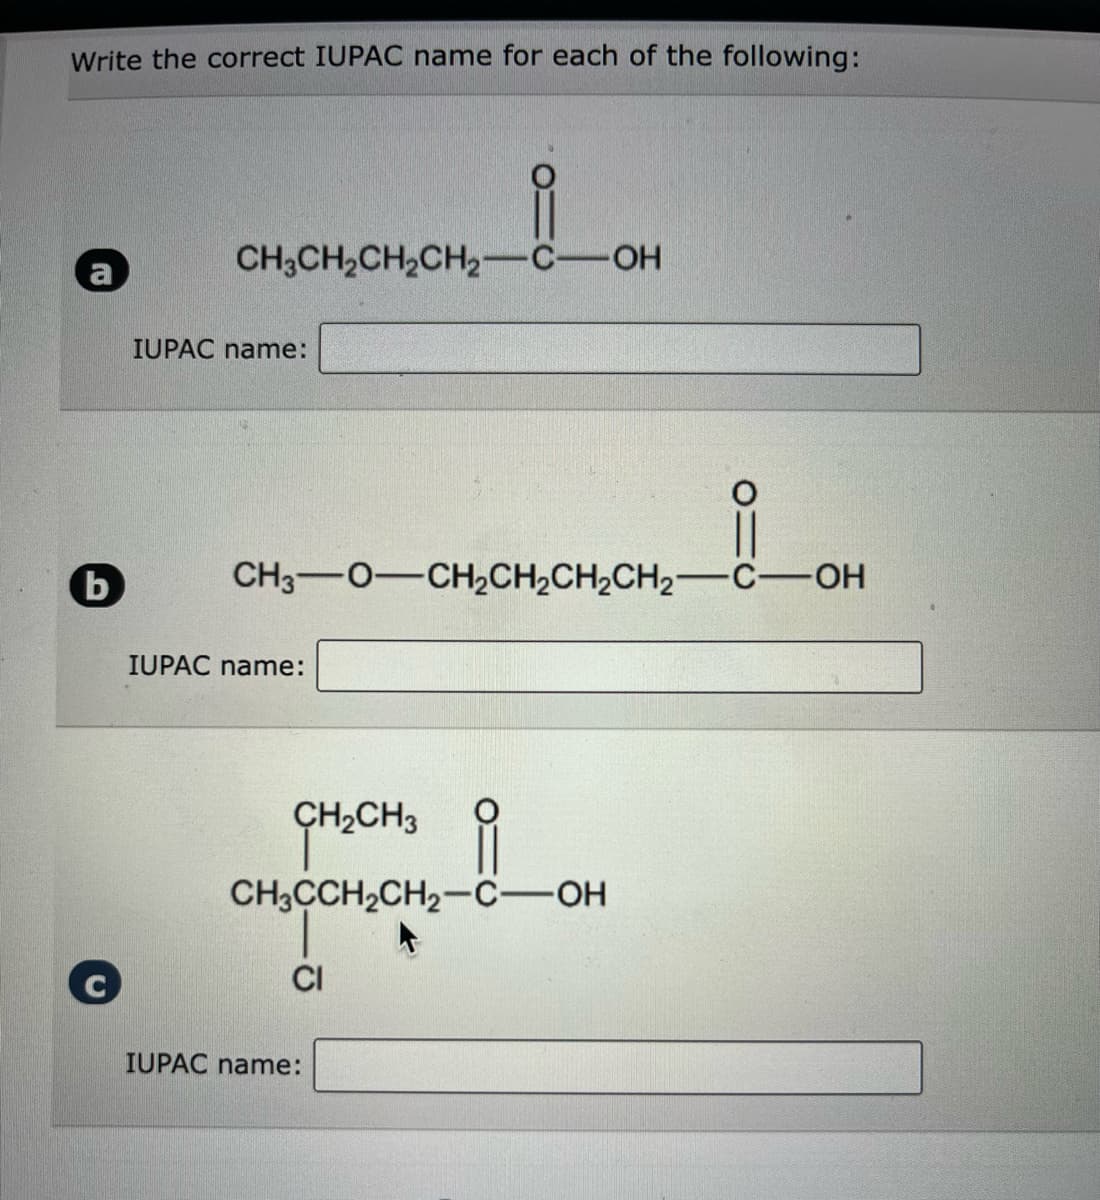 Write the correct IUPAC name for each of the following:
b
요
CH3CH₂CH₂CH₂-C-OH
IUPAC name:
CH3O—CH,CH,CH,CH2−C—OH
IUPAC name:
i
CH3CCH₂CH₂-C-OH
+
CH₂CH3
CI
IUPAC name: